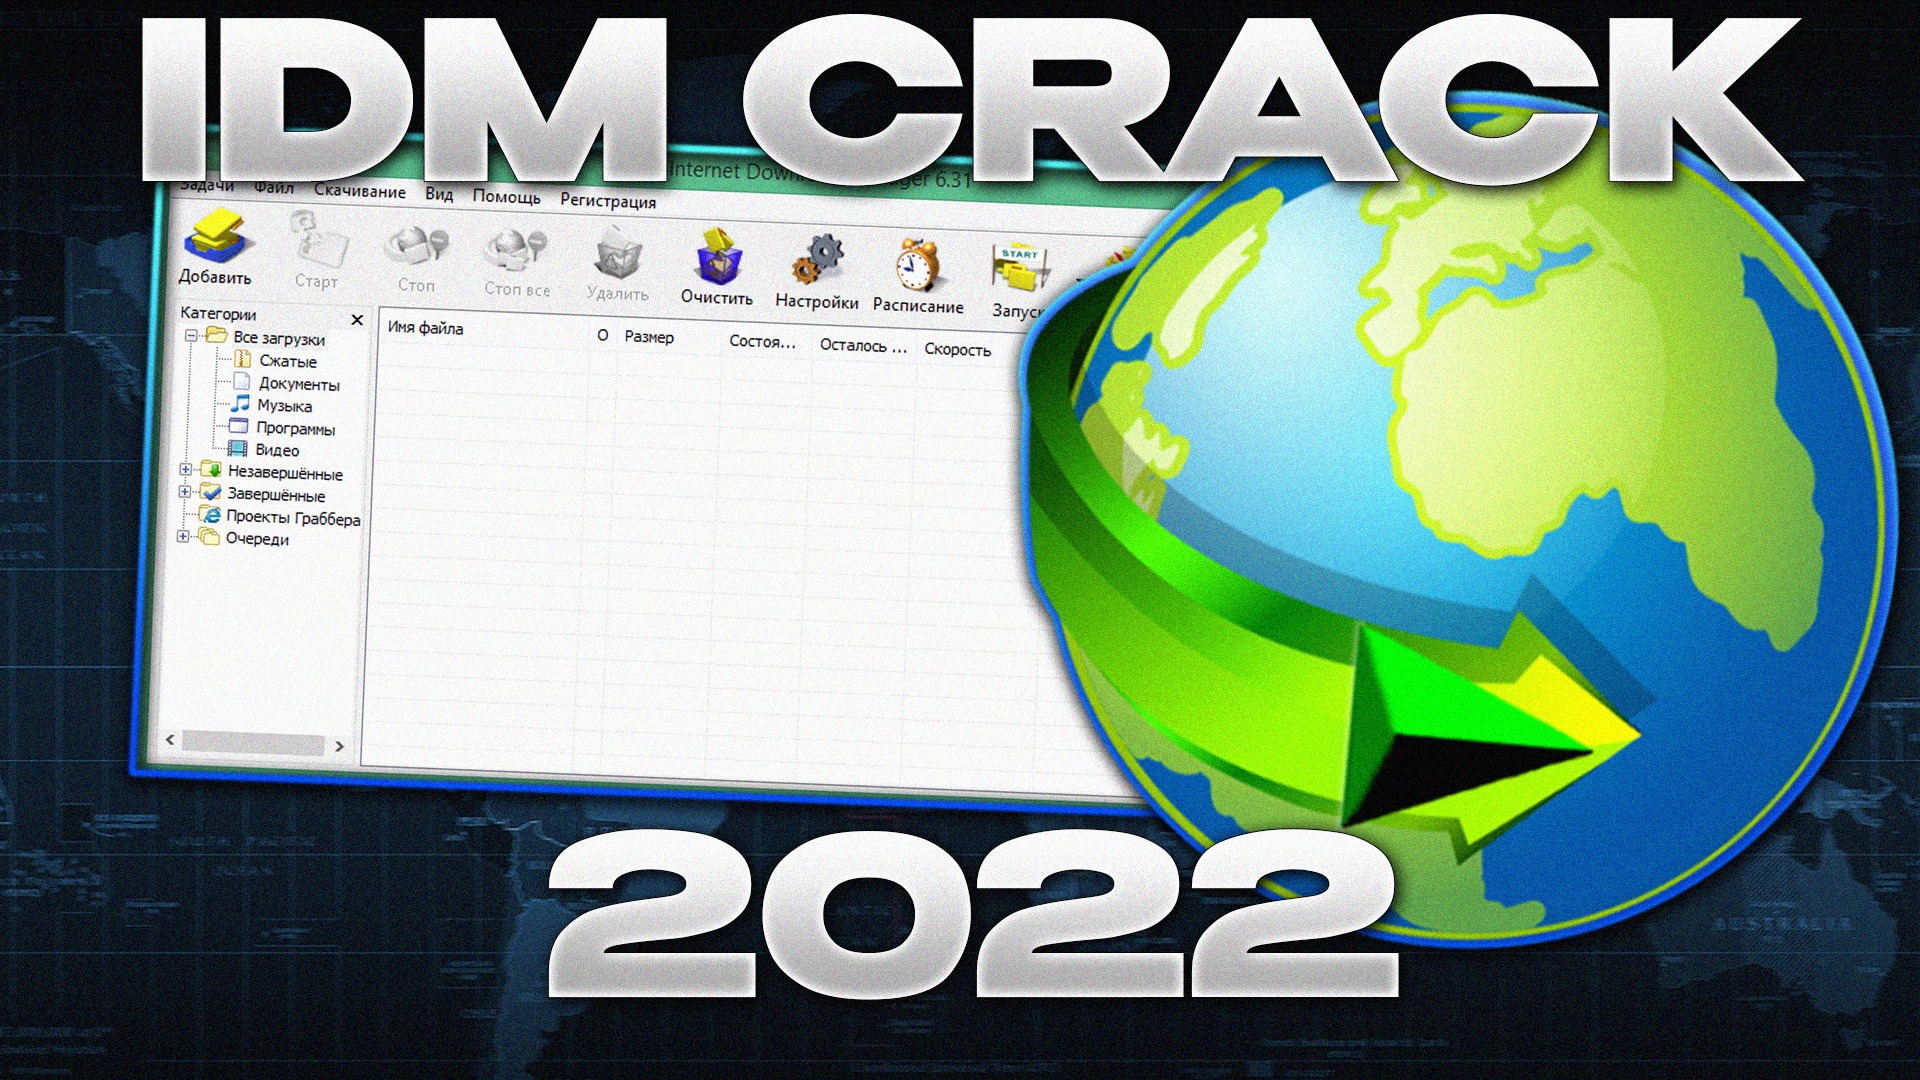 idm download manager crack 2022